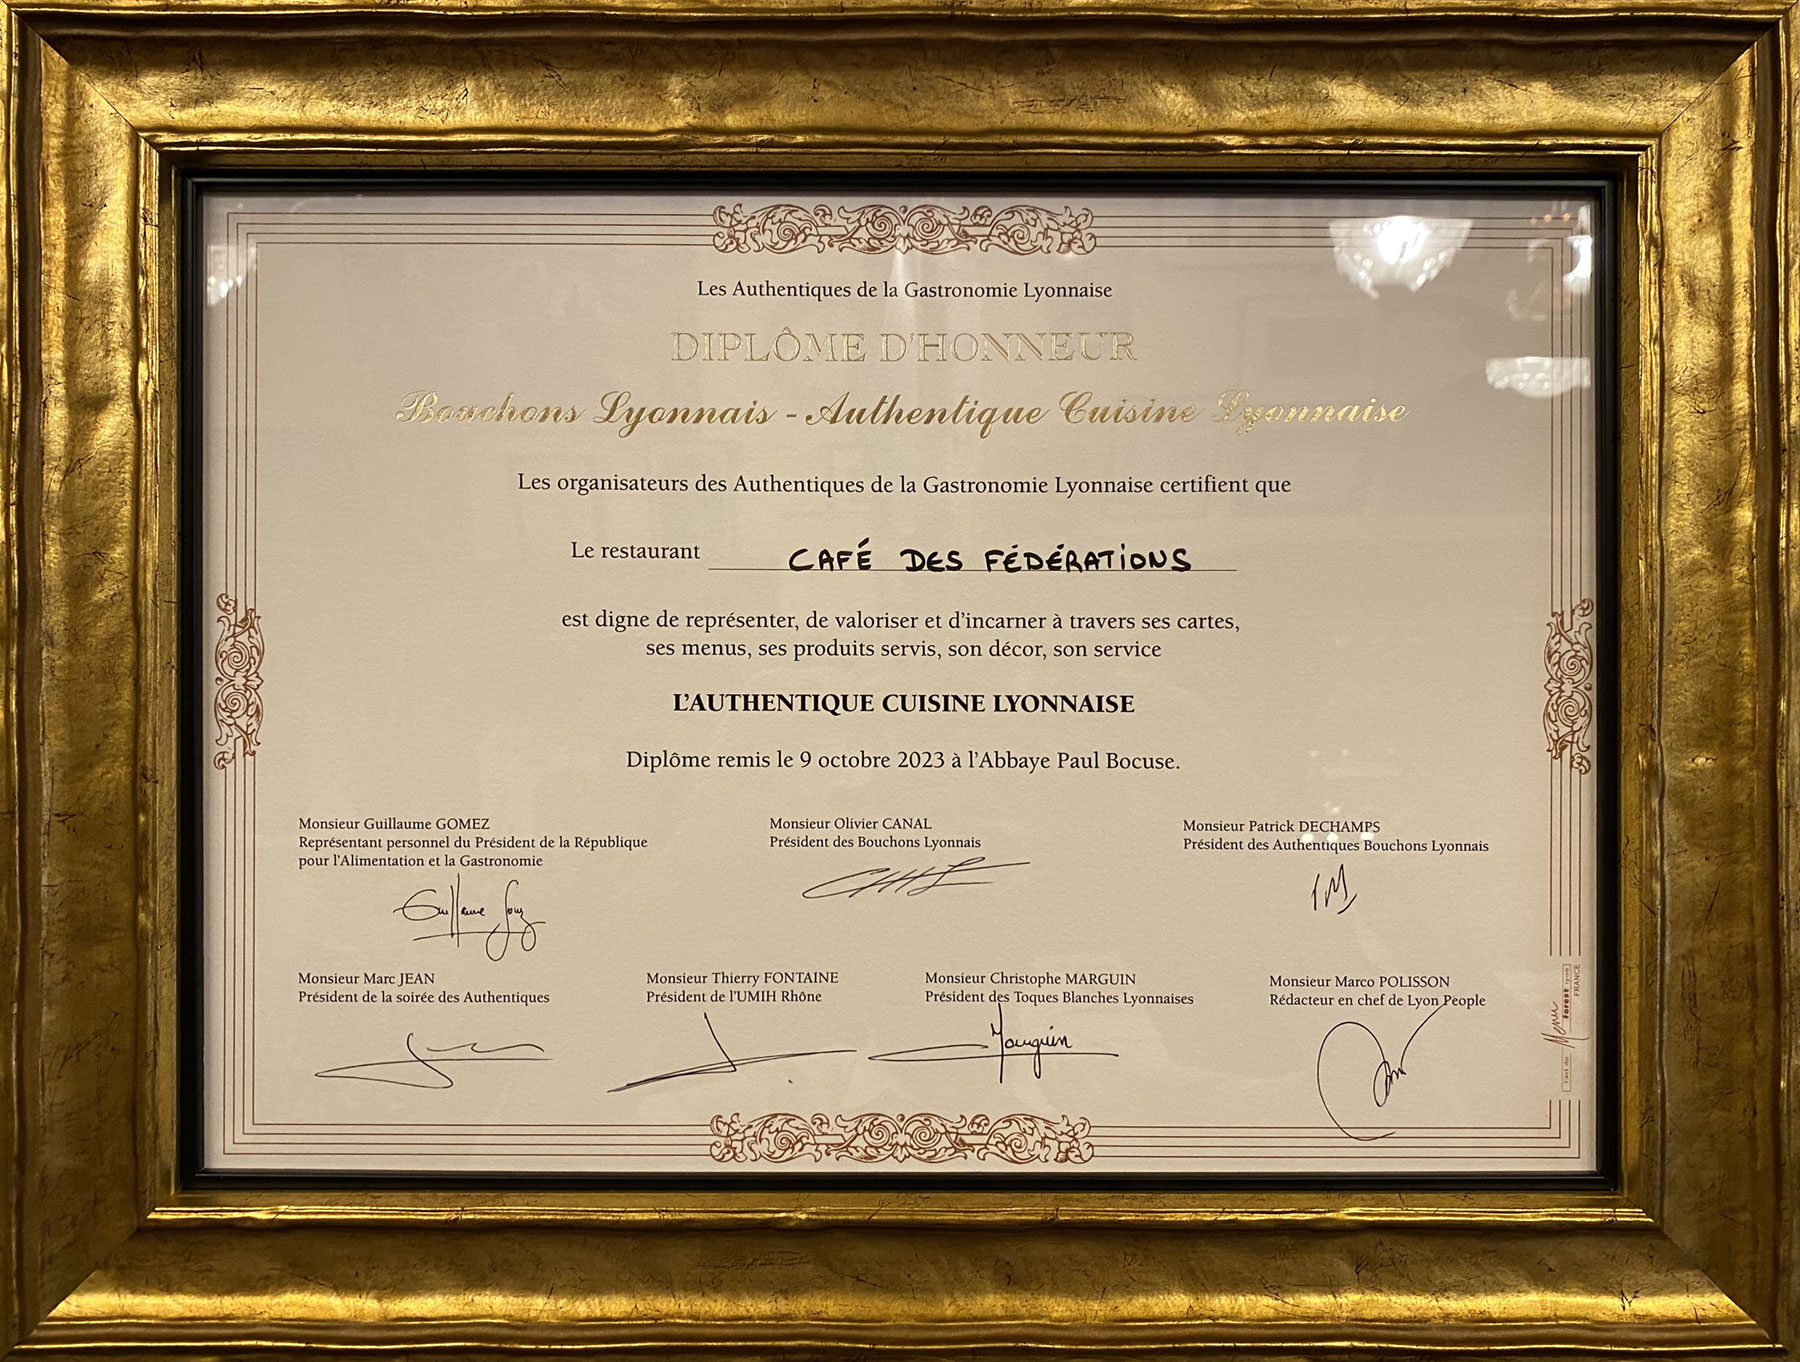 Authentic Bouchon Lyonnais certified by the Authentiques de la Gastronomie Lyonnaise